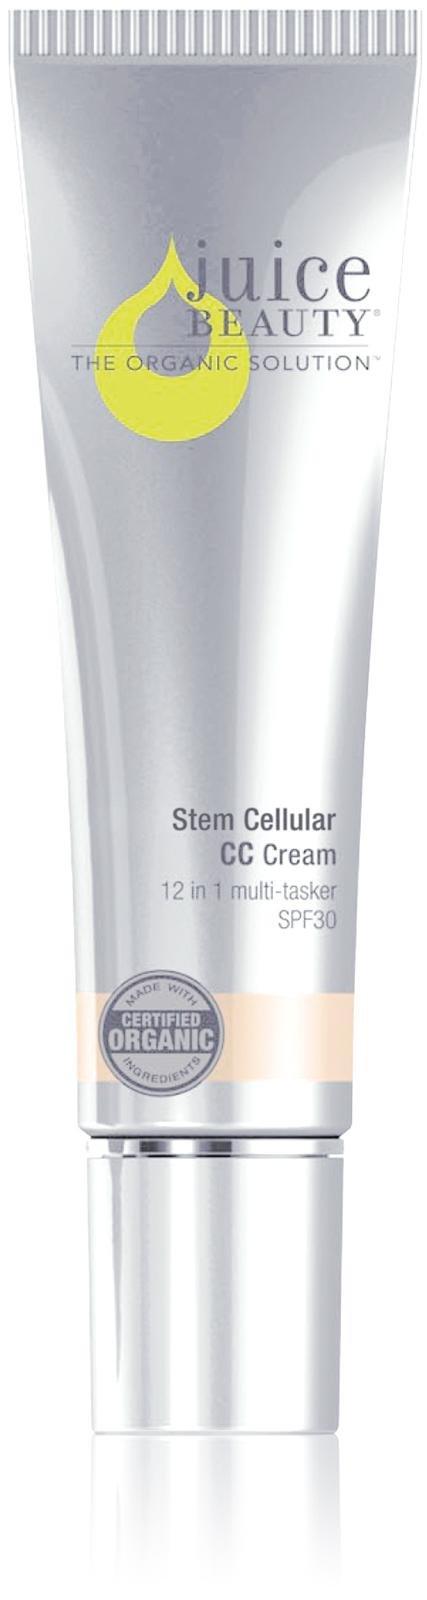 Juice Beauty Stem Cellular Cc Cream